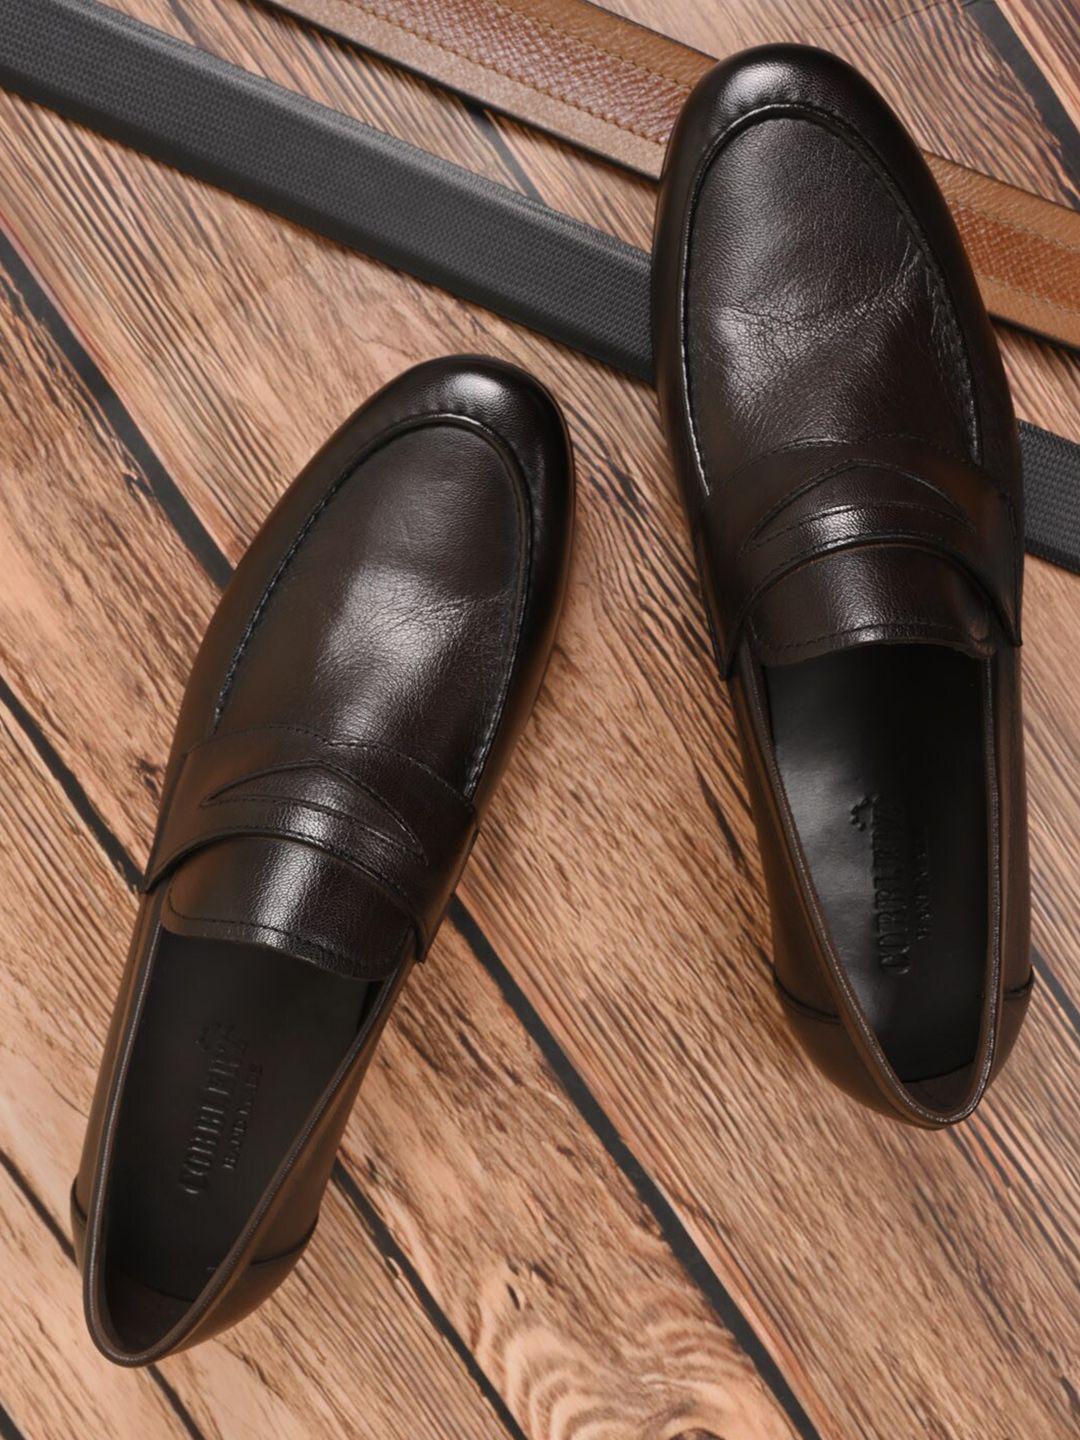 cobblerz men leather slip-on formal loafers